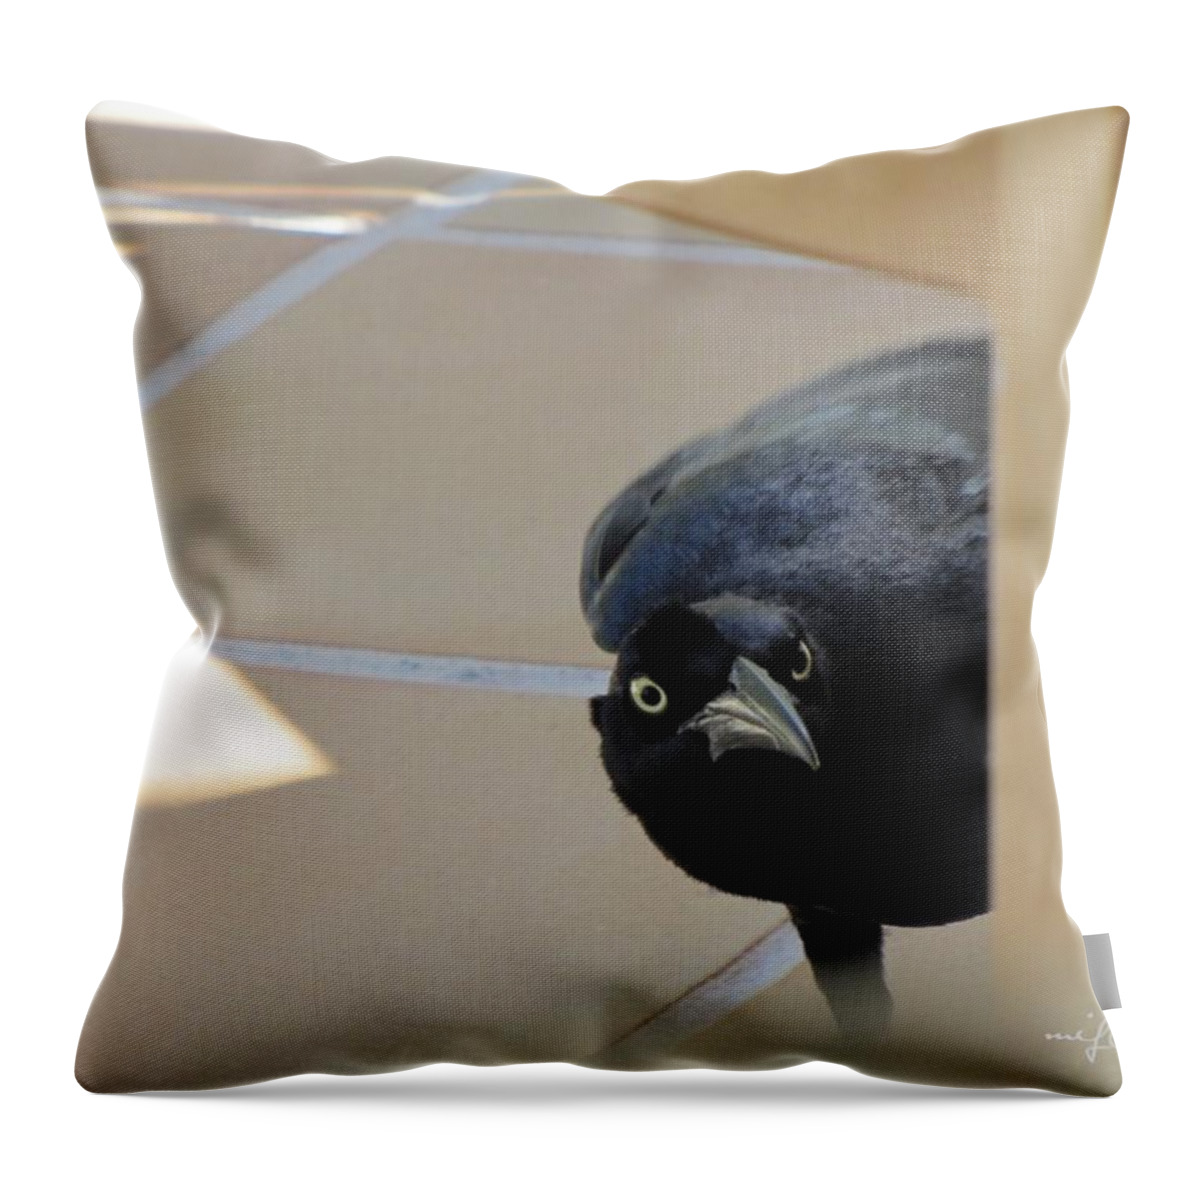 Blackbird Throw Pillow featuring the photograph Blackbird Curiosity 0703 by Maciek Froncisz